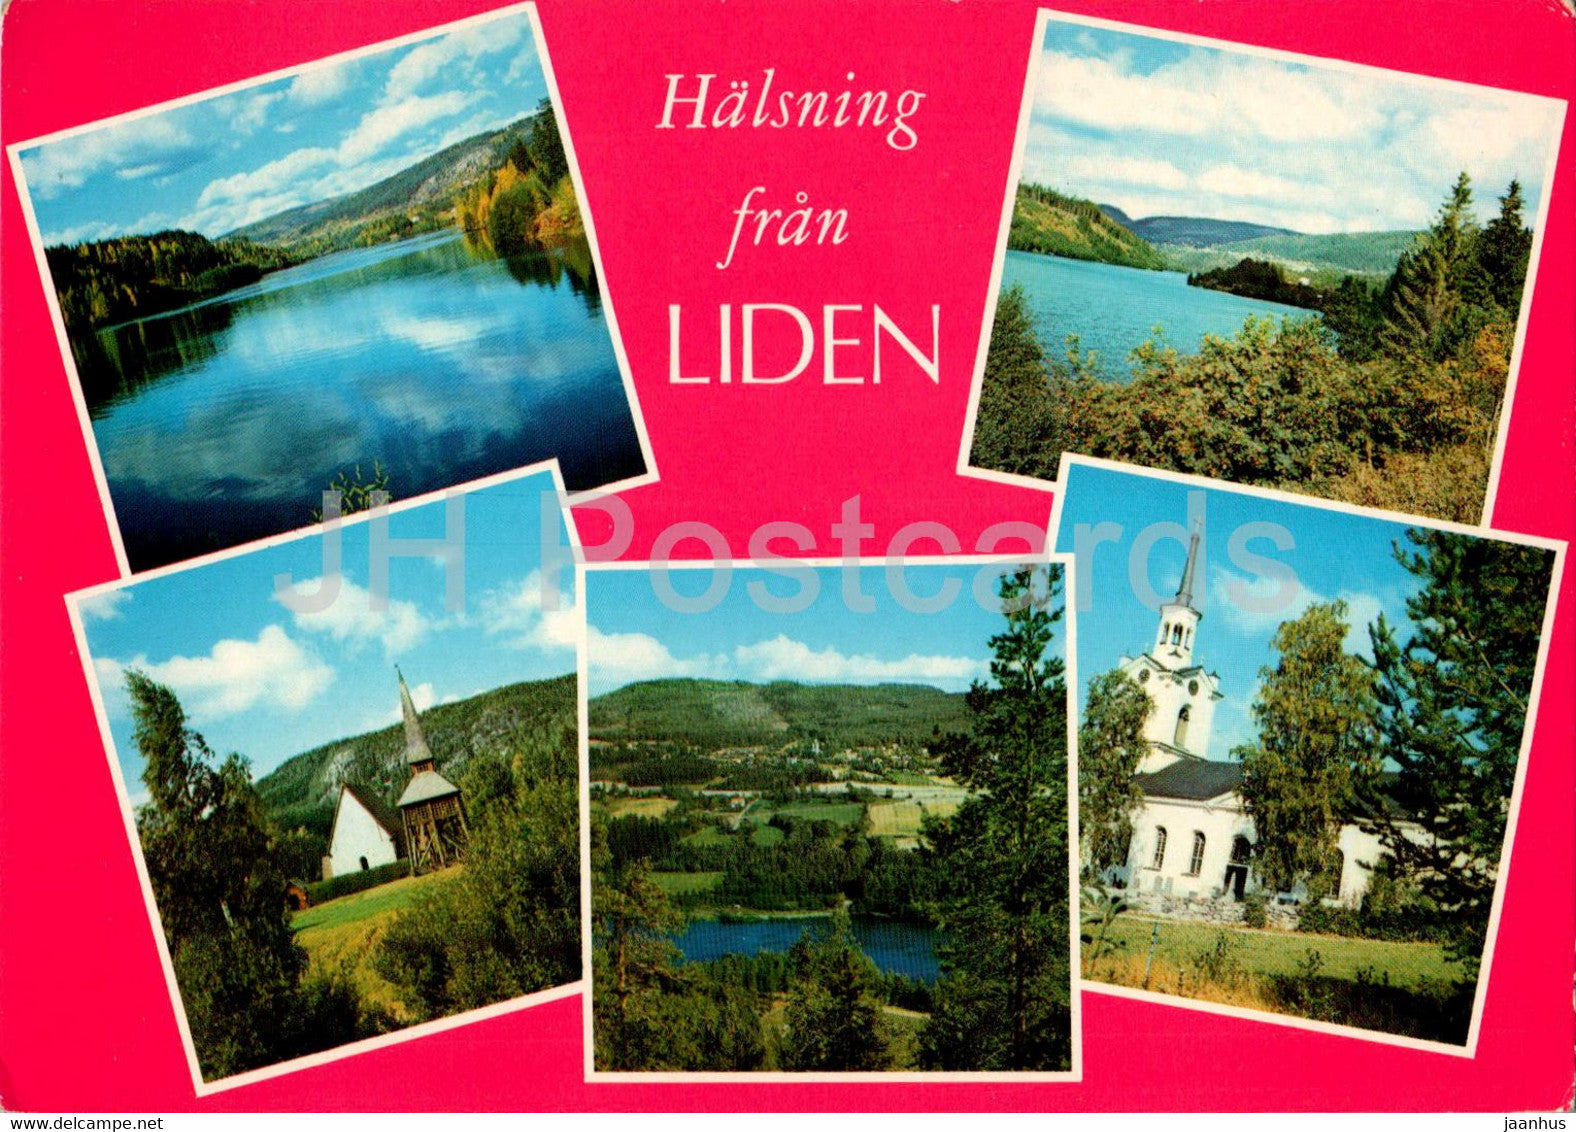 Halsning fran Liden - multiview - 325 - Sweden - unused - JH Postcards